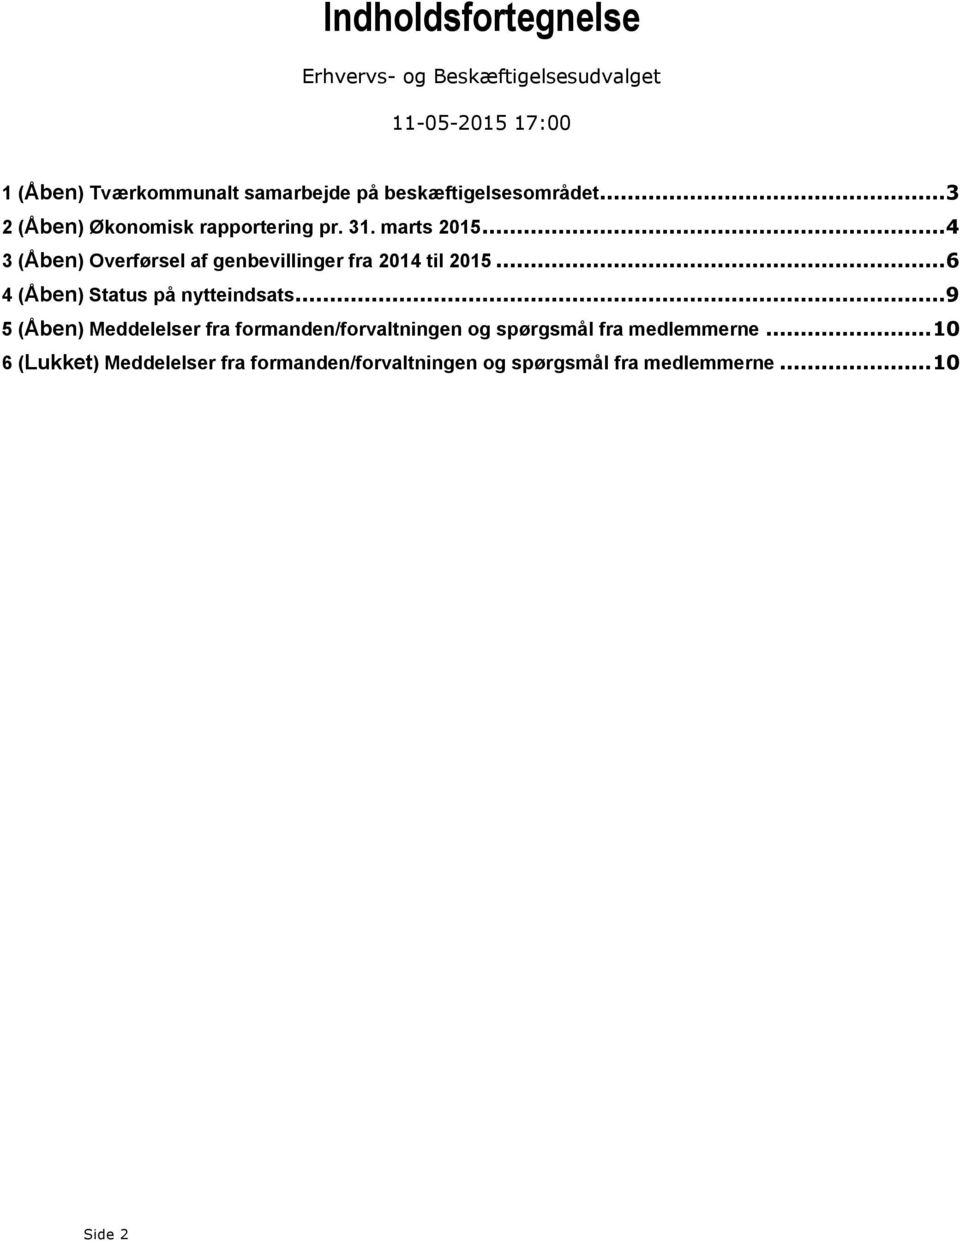 ..4 3 (Åben) Overførsel af genbevillinger fra 2014 til 2015...6 4 (Åben) Status på nytteindsats.